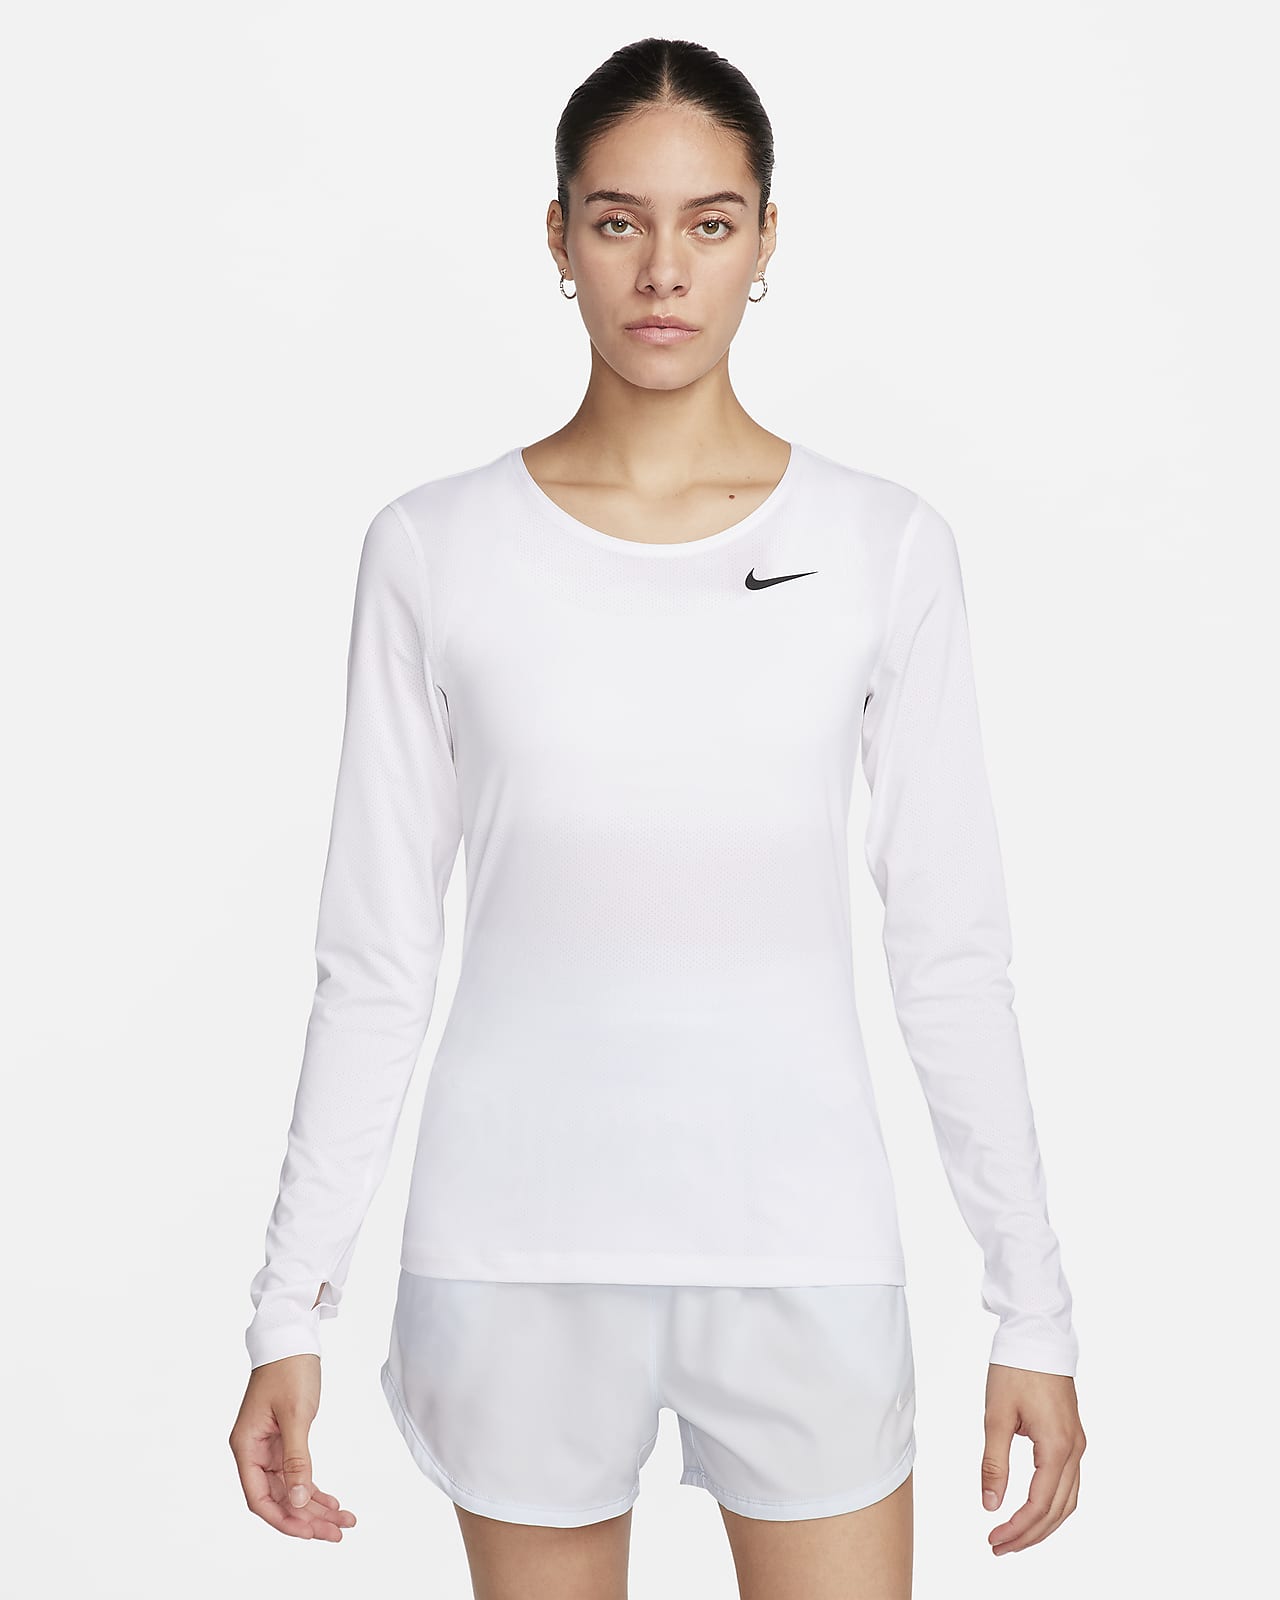 Nike Pro Women's Long-Sleeve Top